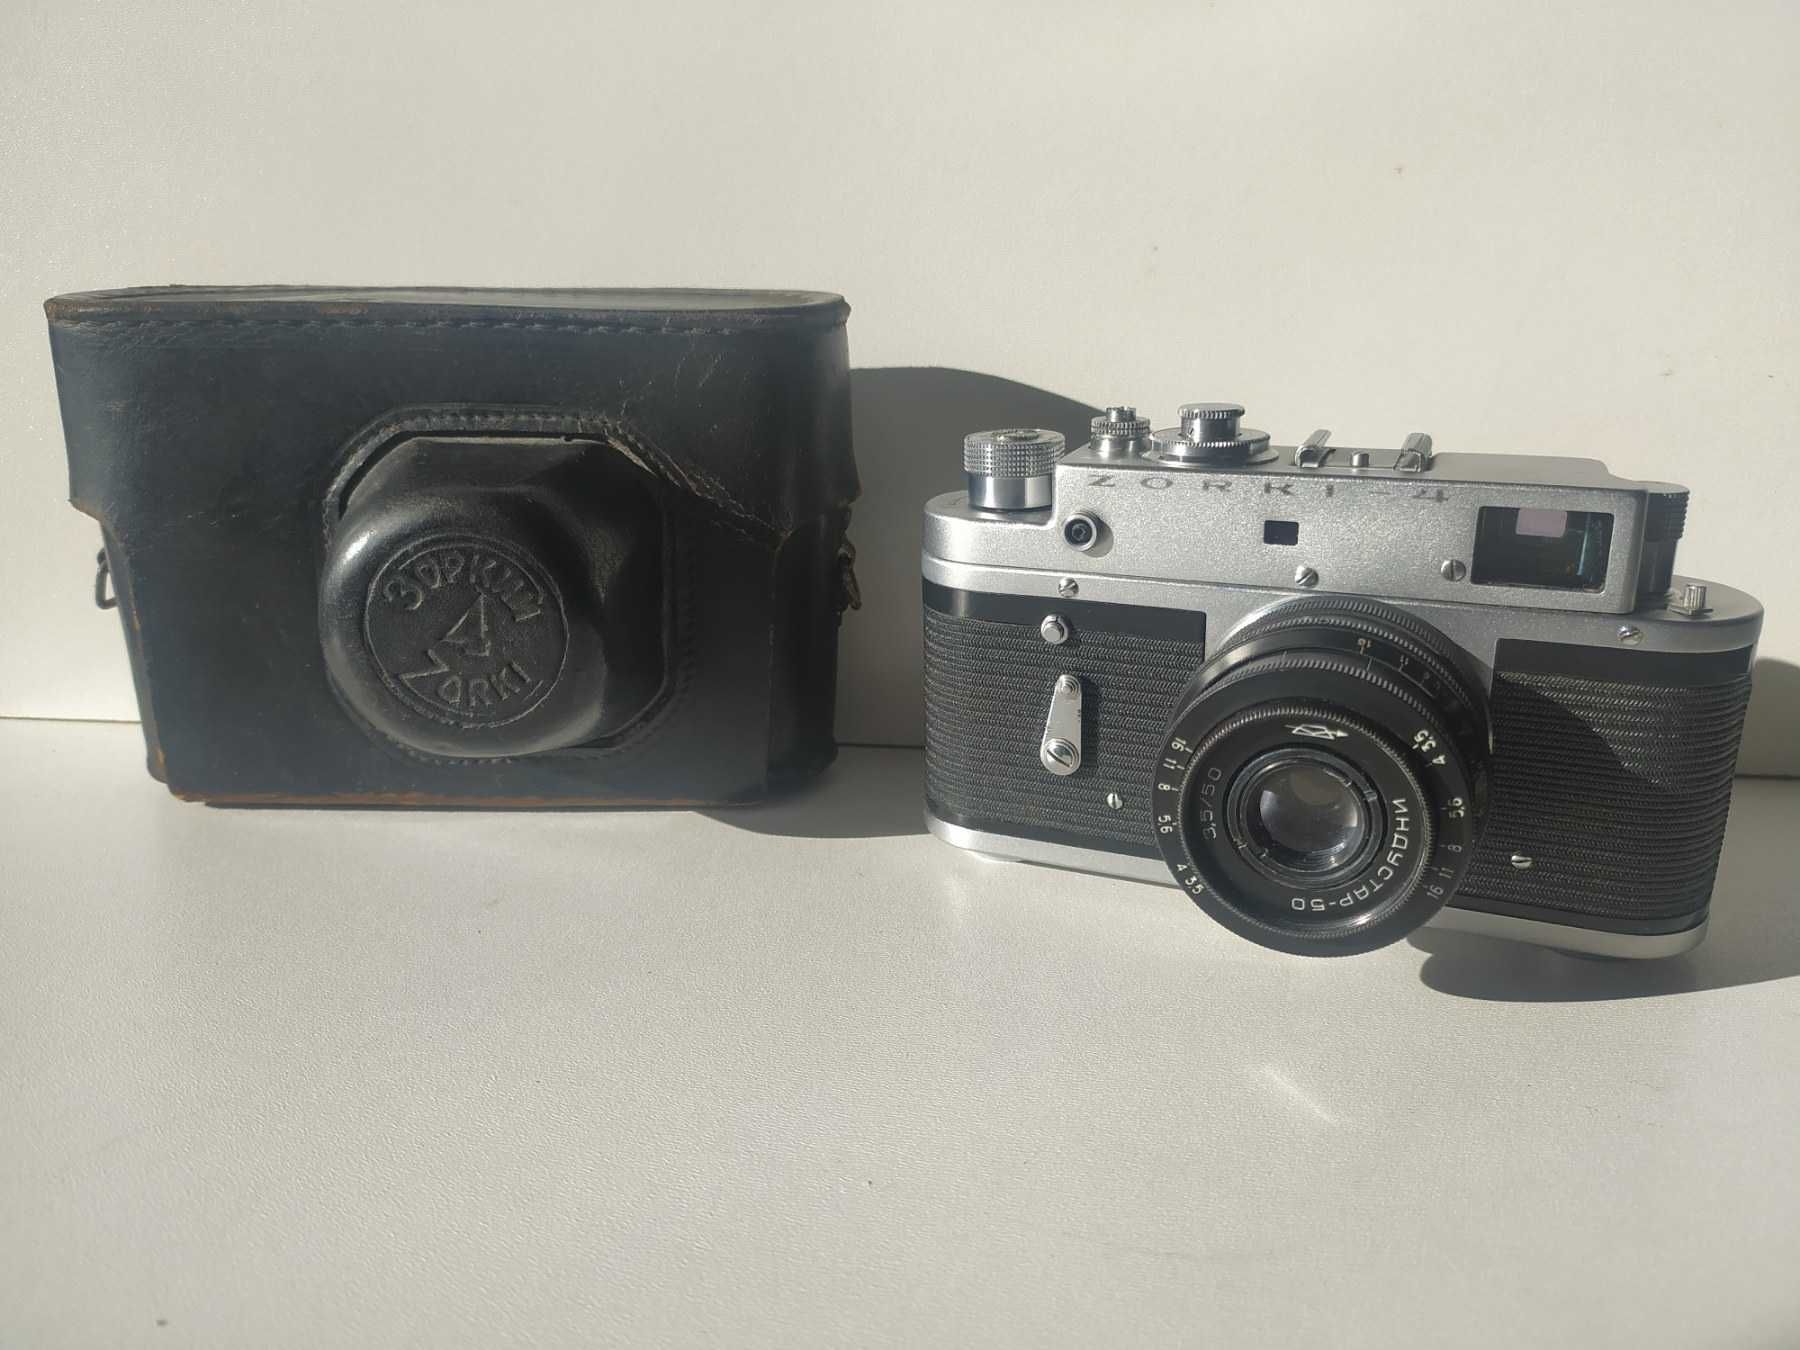 Kolekcjonerski aparat Zorki 4 - 1969 r  z skórzanym pokrowcem